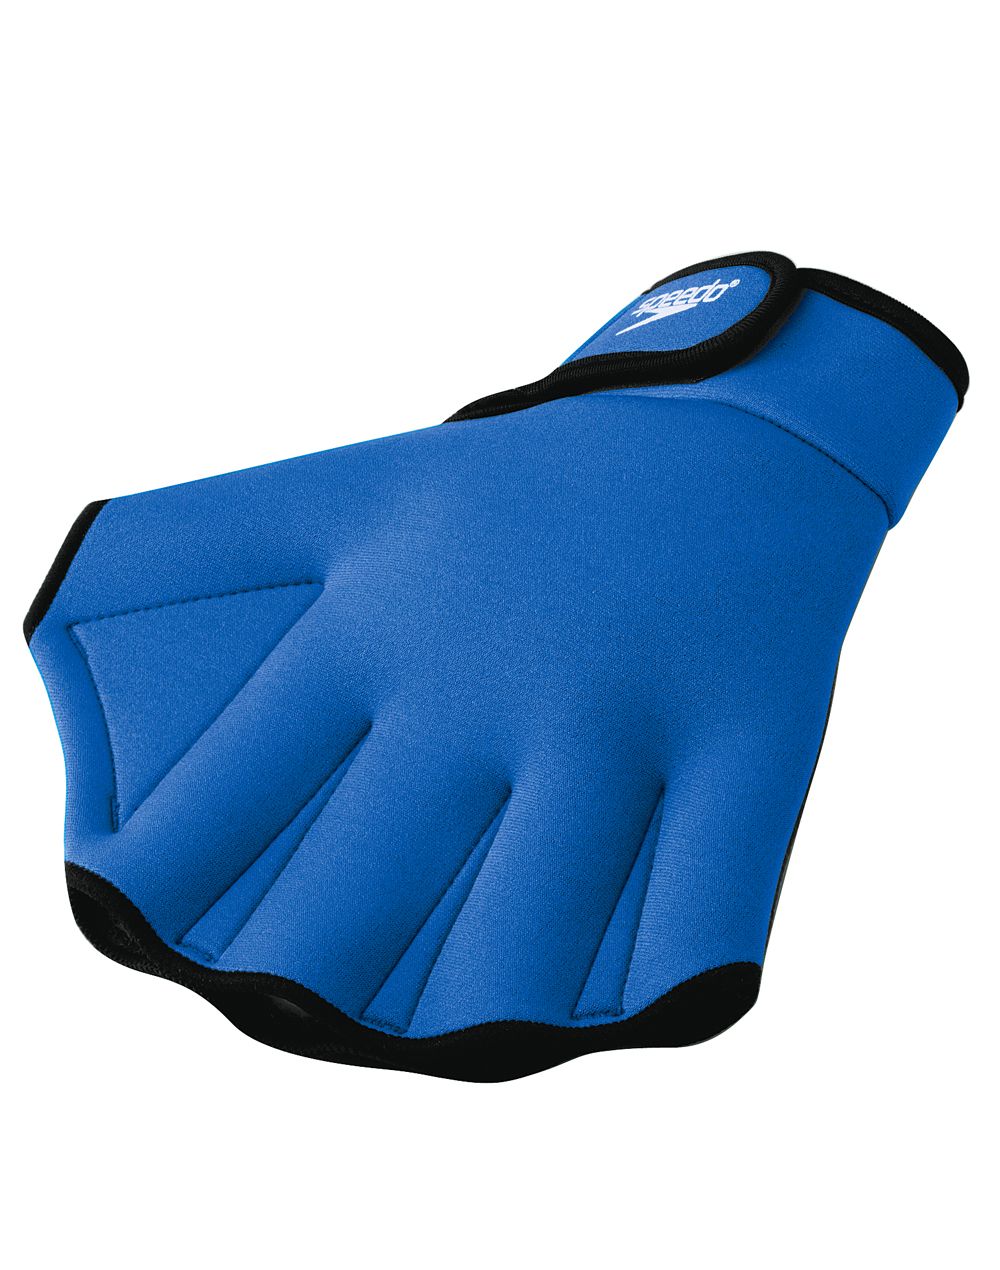 Speedo Aqua Fitness Glove#color_blue